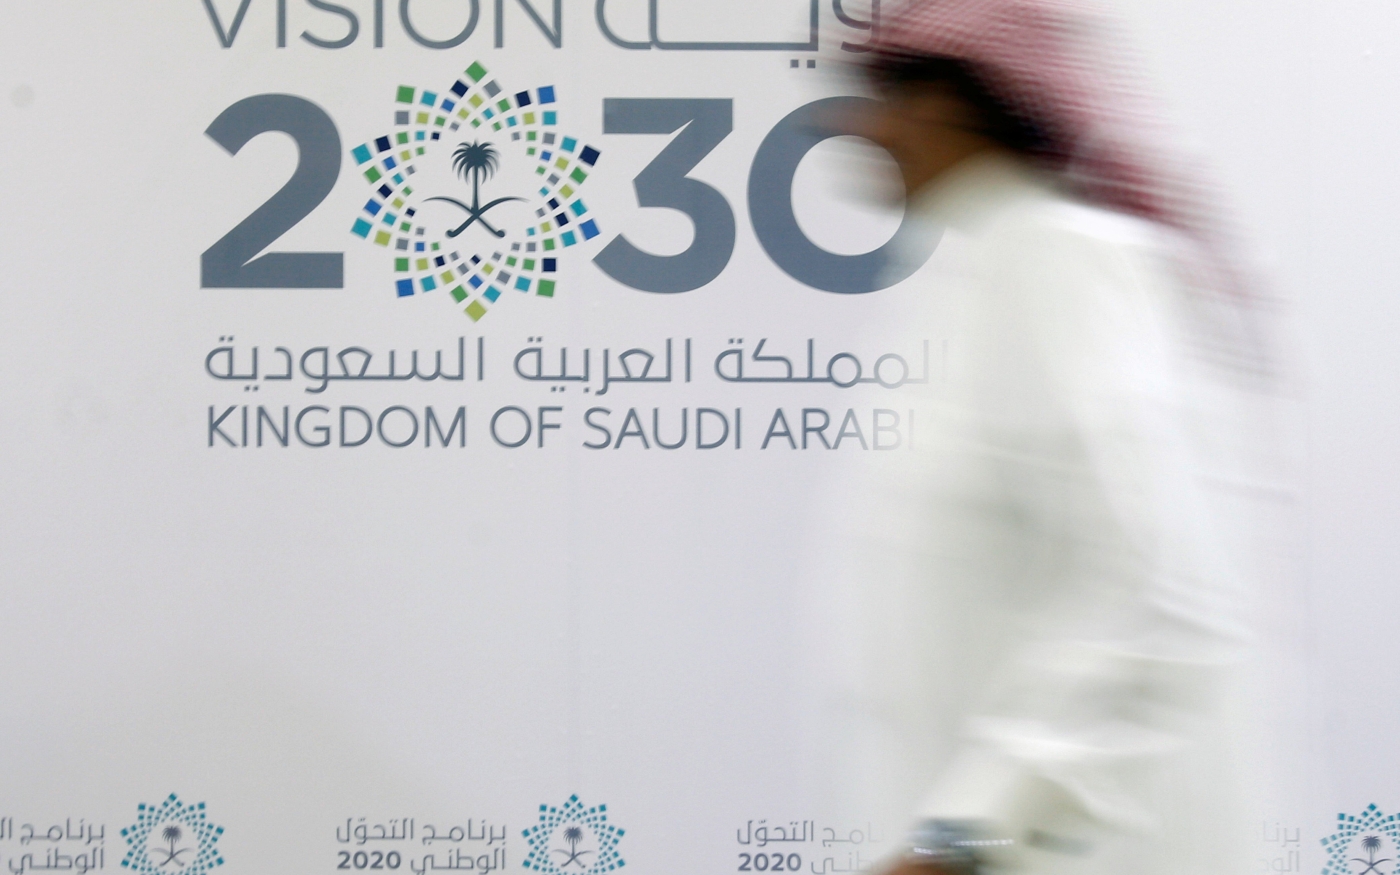 Un homme passe devant le logo de Vision 2030 après une conférence de presse à Djeddah, en Arabie saoudite (Reuters)